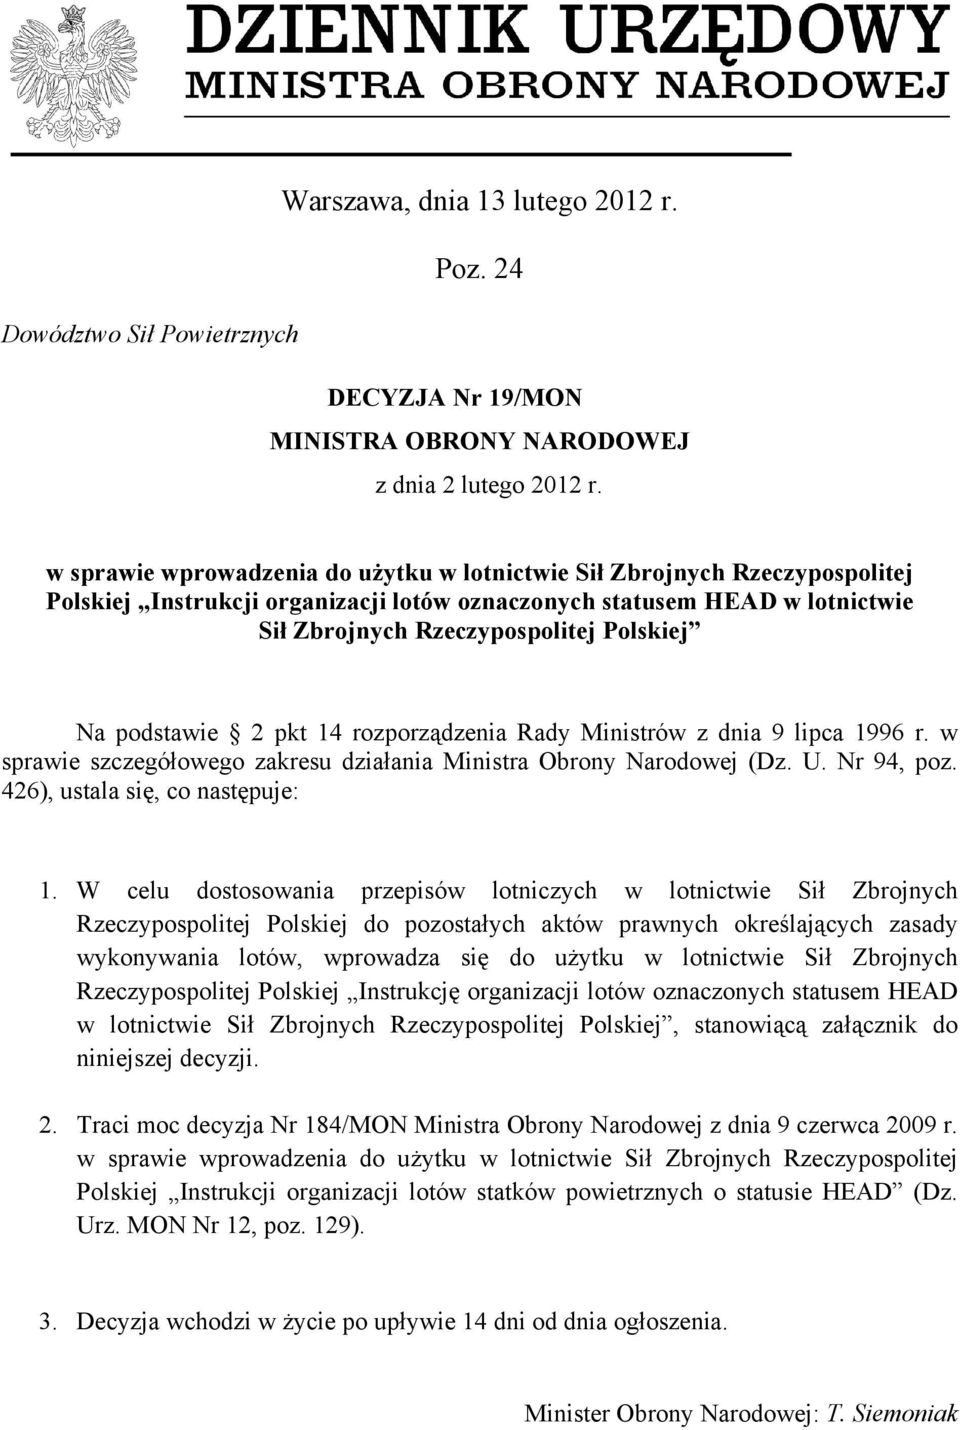 podstawie 2 pkt 14 rozporządzenia Rady Ministrów z dnia 9 lipca 1996 r. w sprawie szczegółowego zakresu działania Ministra Obrony Narodowej (Dz. U. Nr 94, poz. 426), ustala się, co następuje: 1.